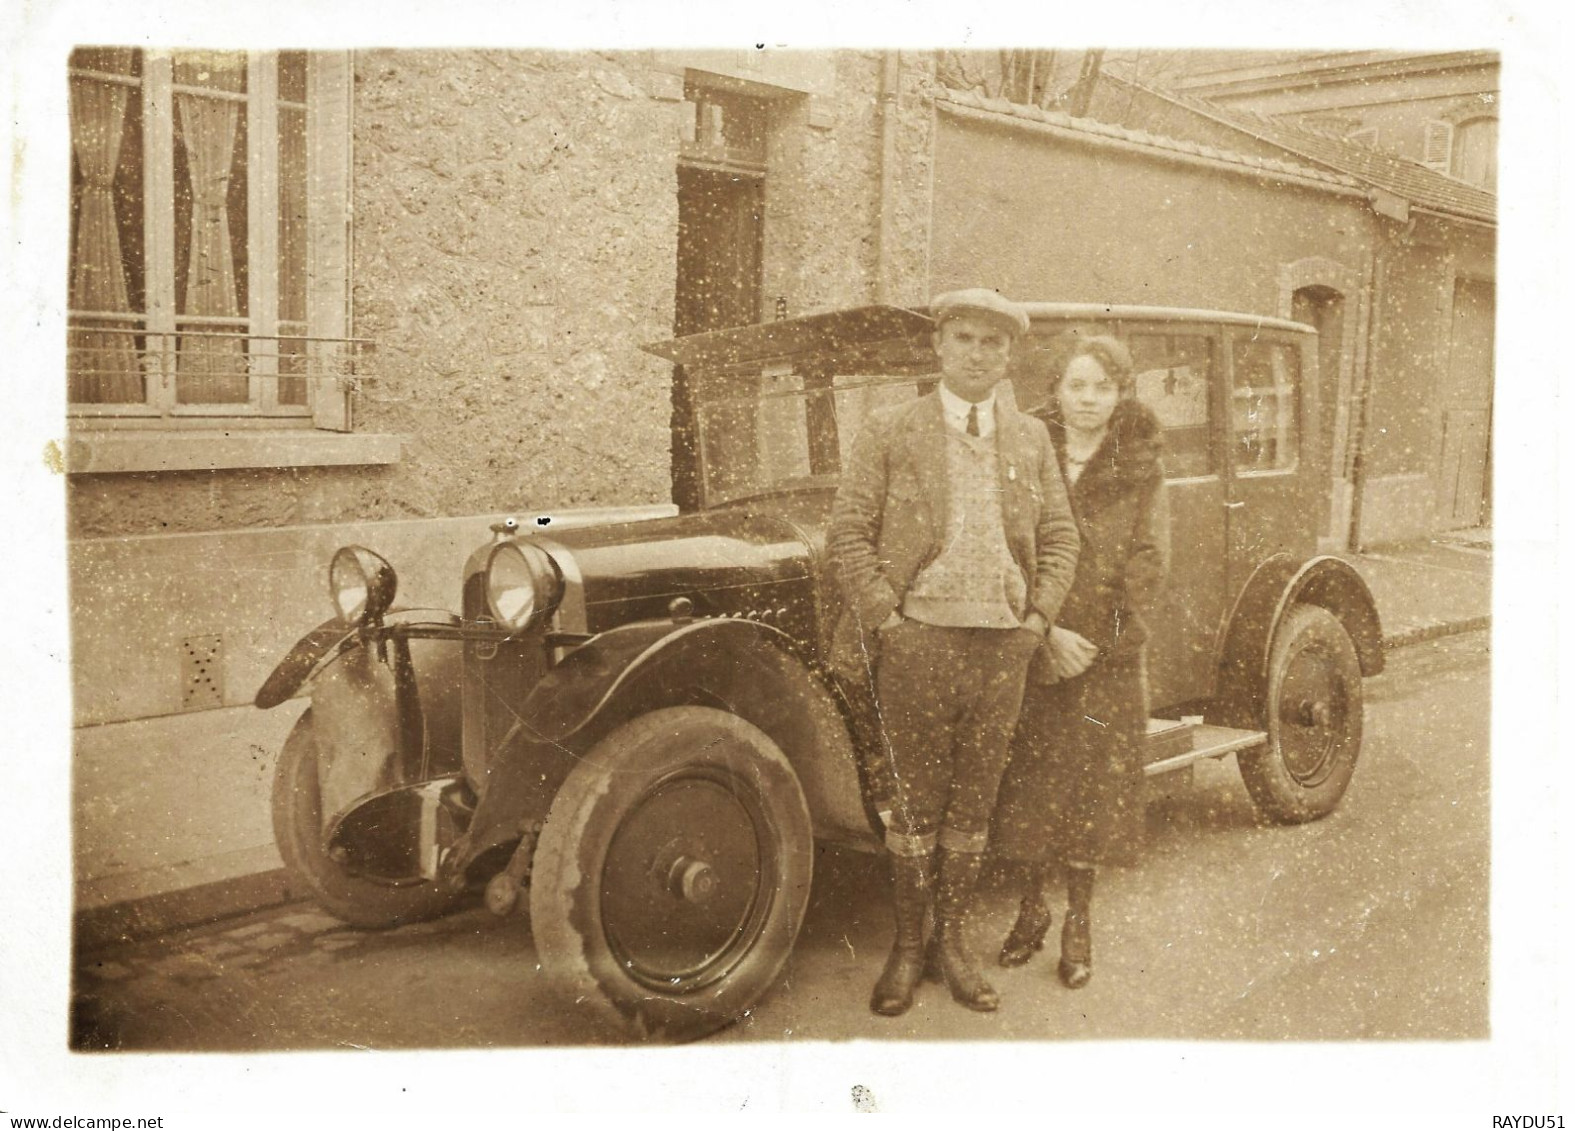 CITROEN ANNEES 1930 - Automobile